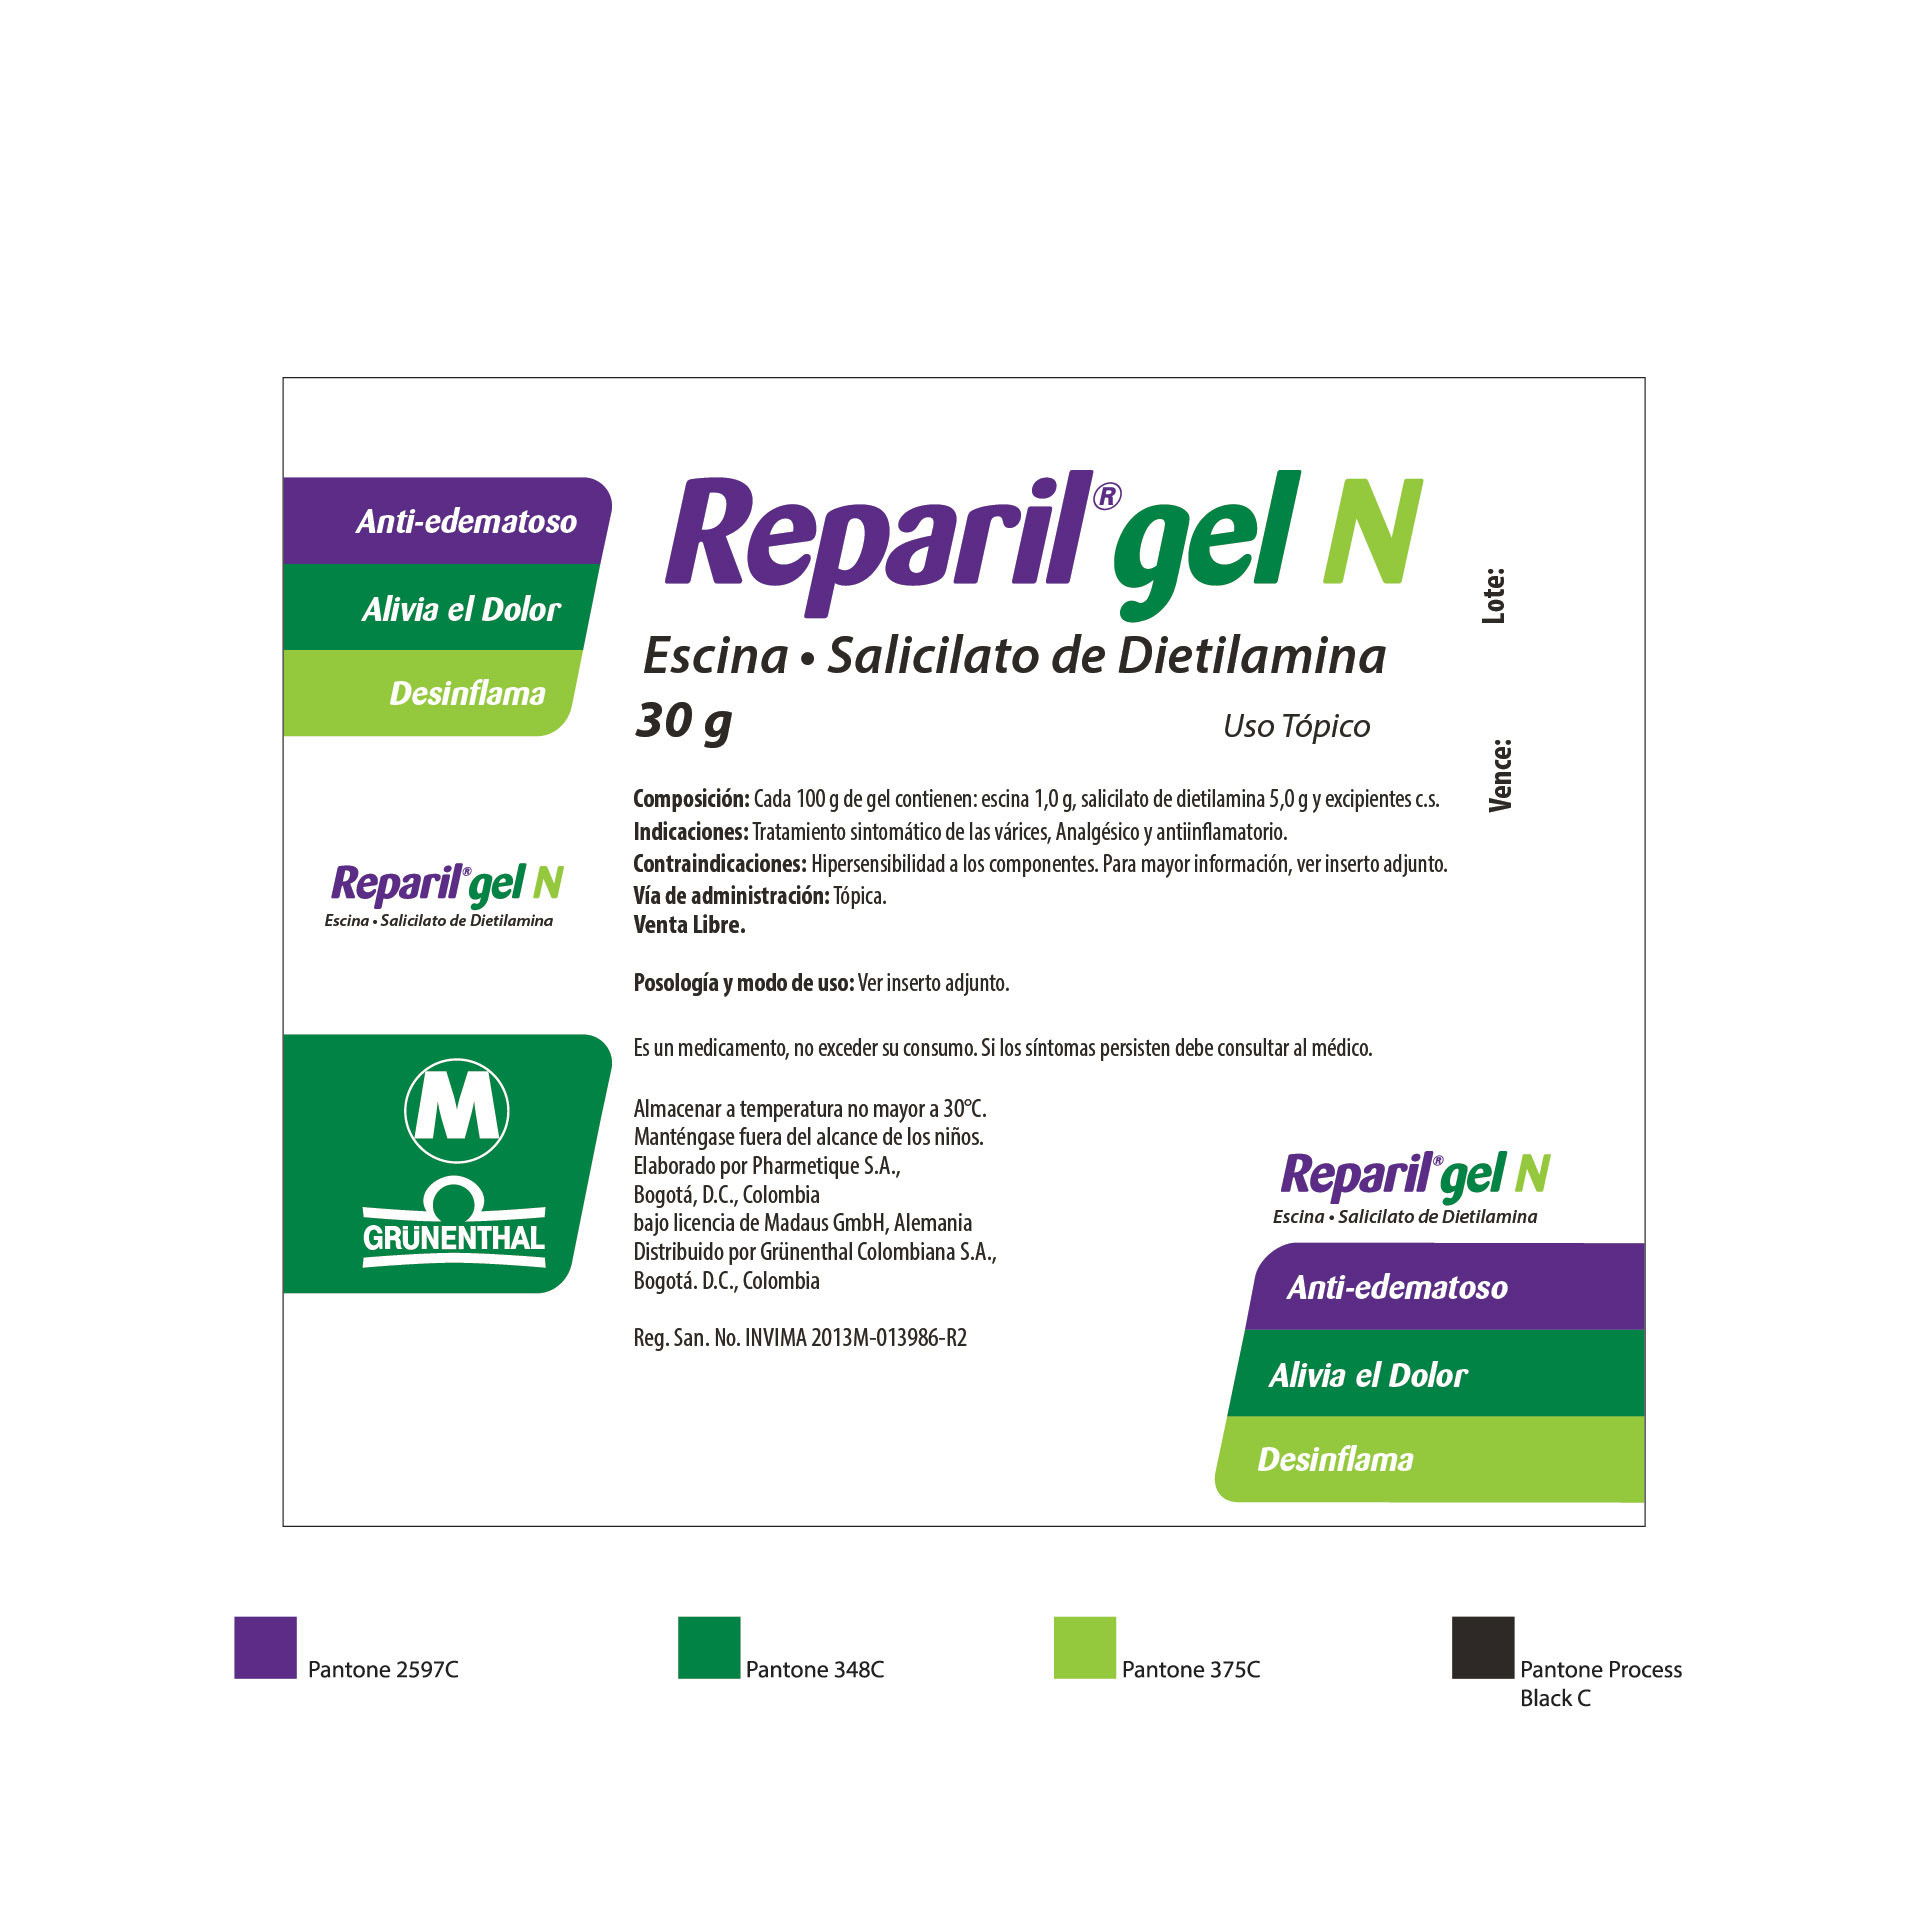 Diseño de Identidad Visual y Logotipo para la marca del medicamento Reparil de Grunenthal